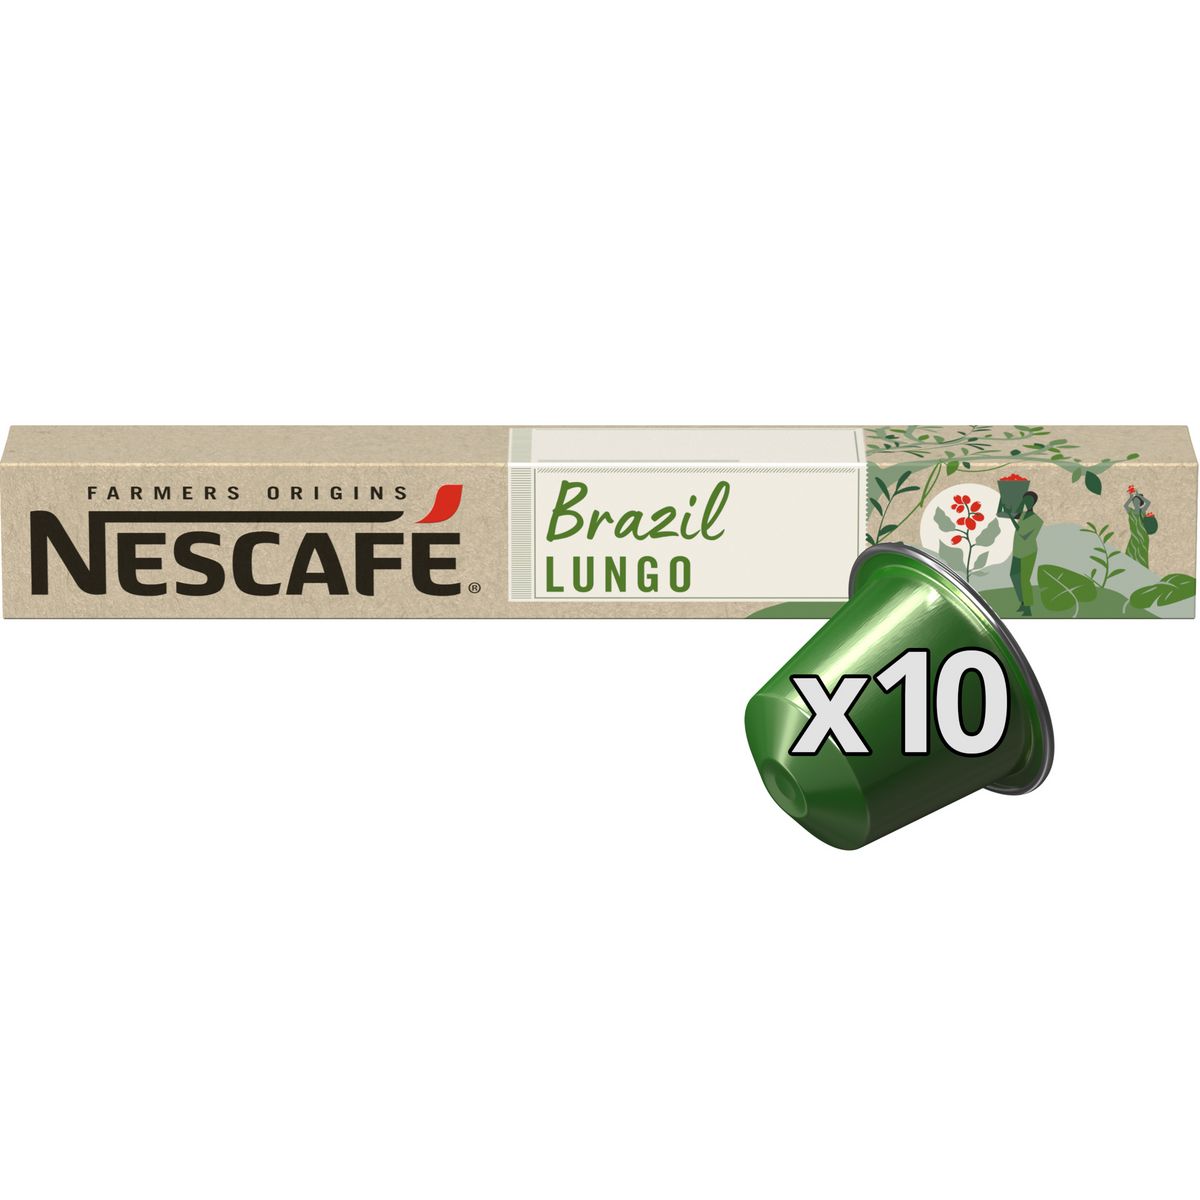 NESCAFE Farmers origins Capsules de café Brazil lungo intensité 8 compatibles Nespresso 10 capsules 52g